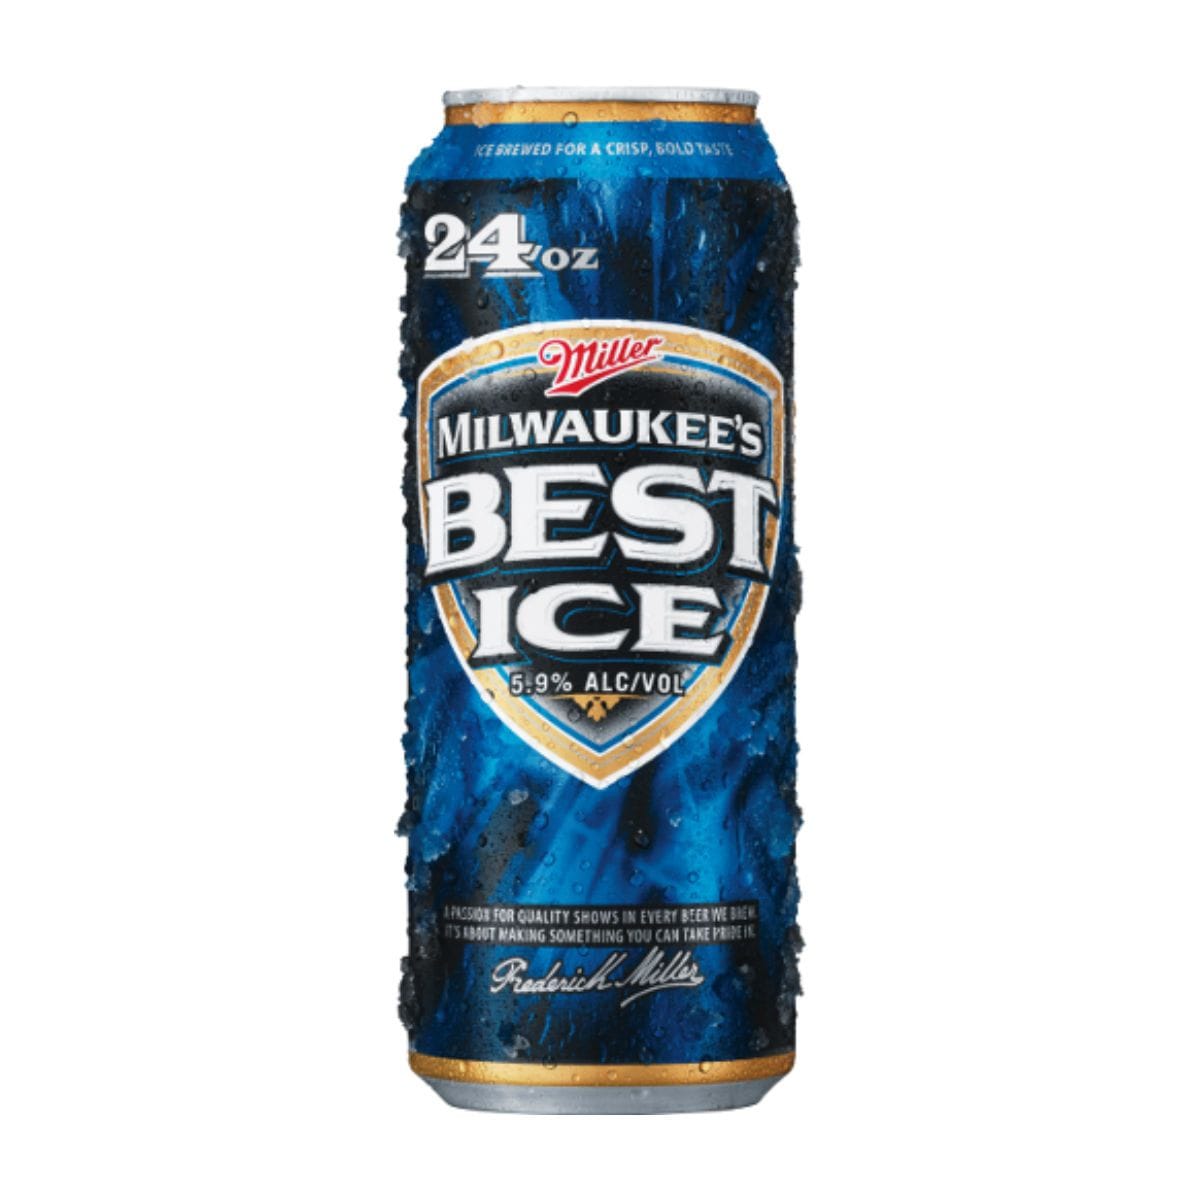 Пиво айс. Пиво Milwaukee's best баночное. Milwaukee best пиво из 90х. Милуоки Бест пиво. Пиво Милуоки Бест в 90х.